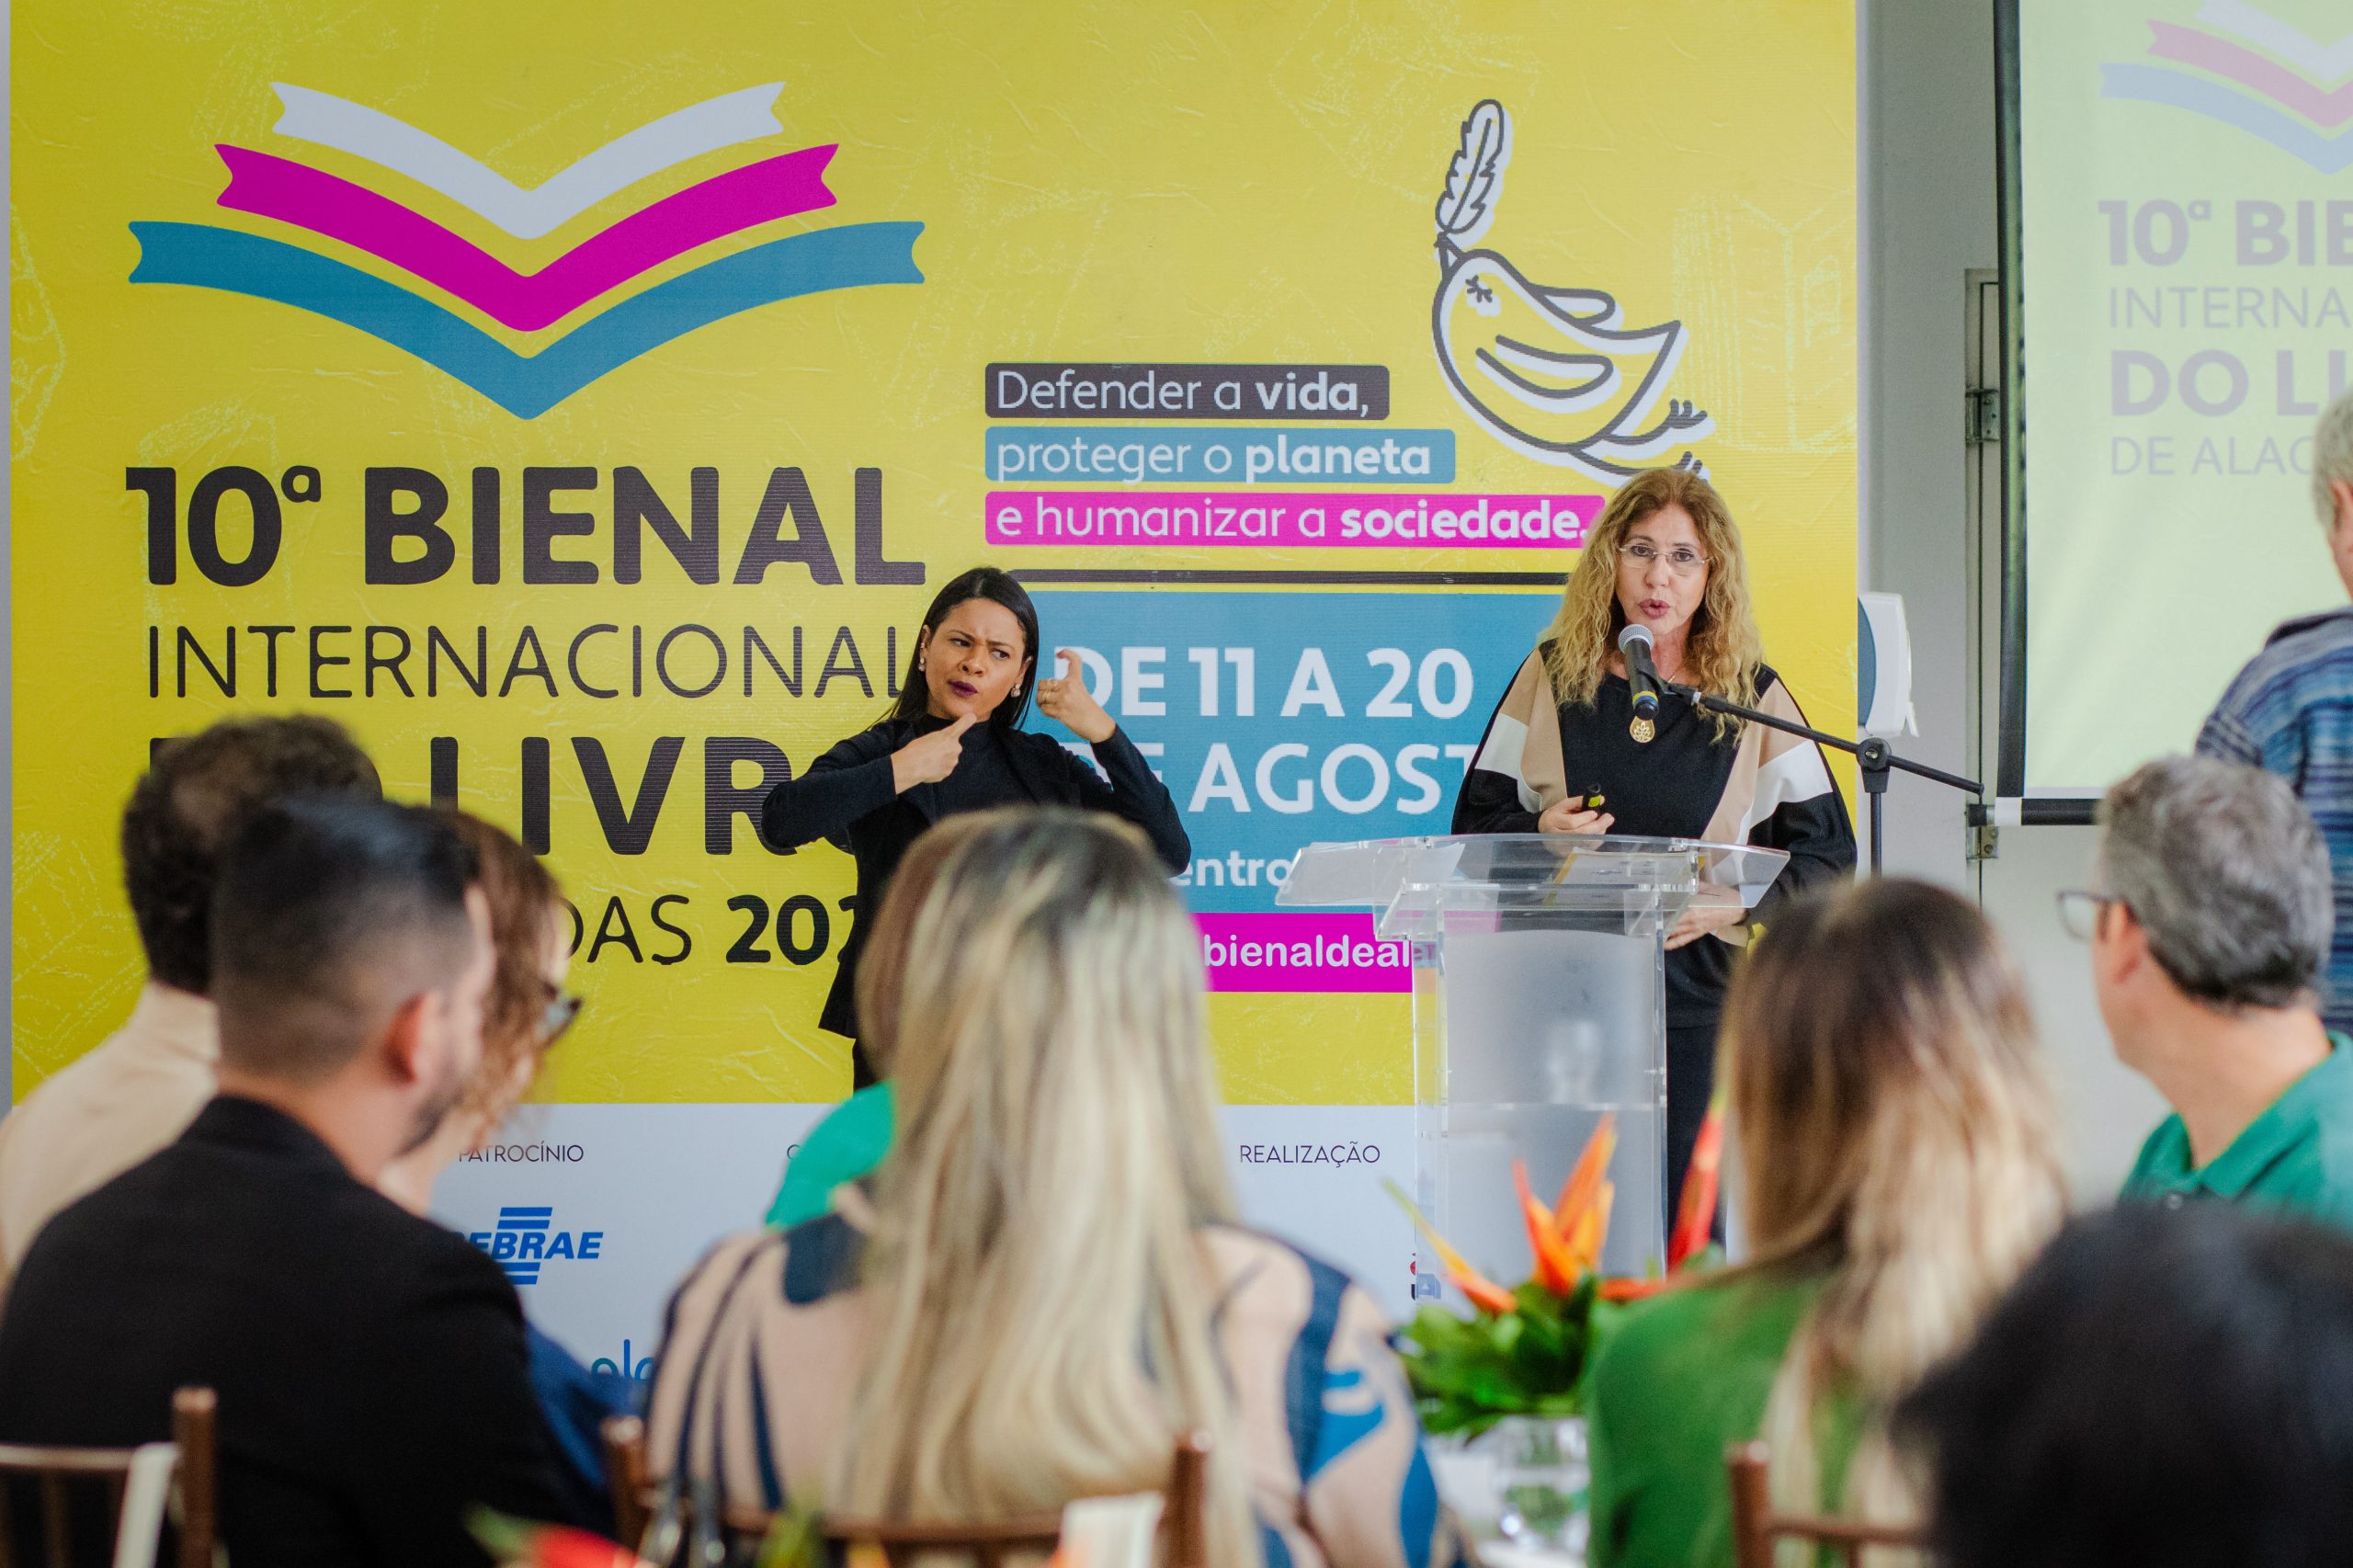 10ª Bienal Internacional do Livro conta com parceria do Governo de Alagoas